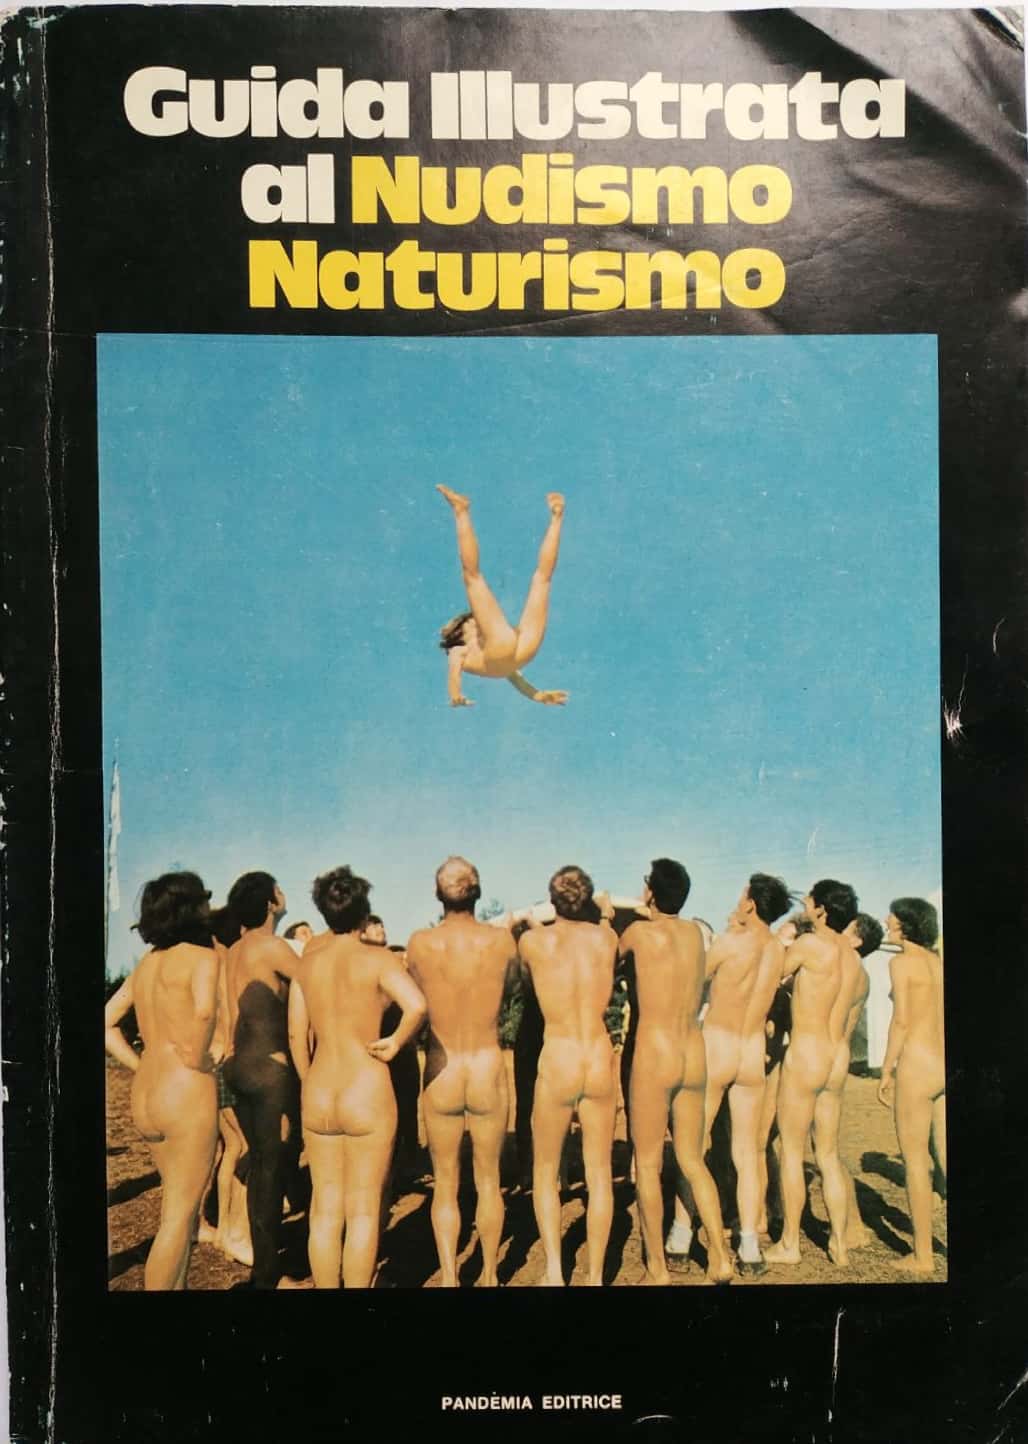 Guida illustrata al Nudismo Naturismo. Introvabile!